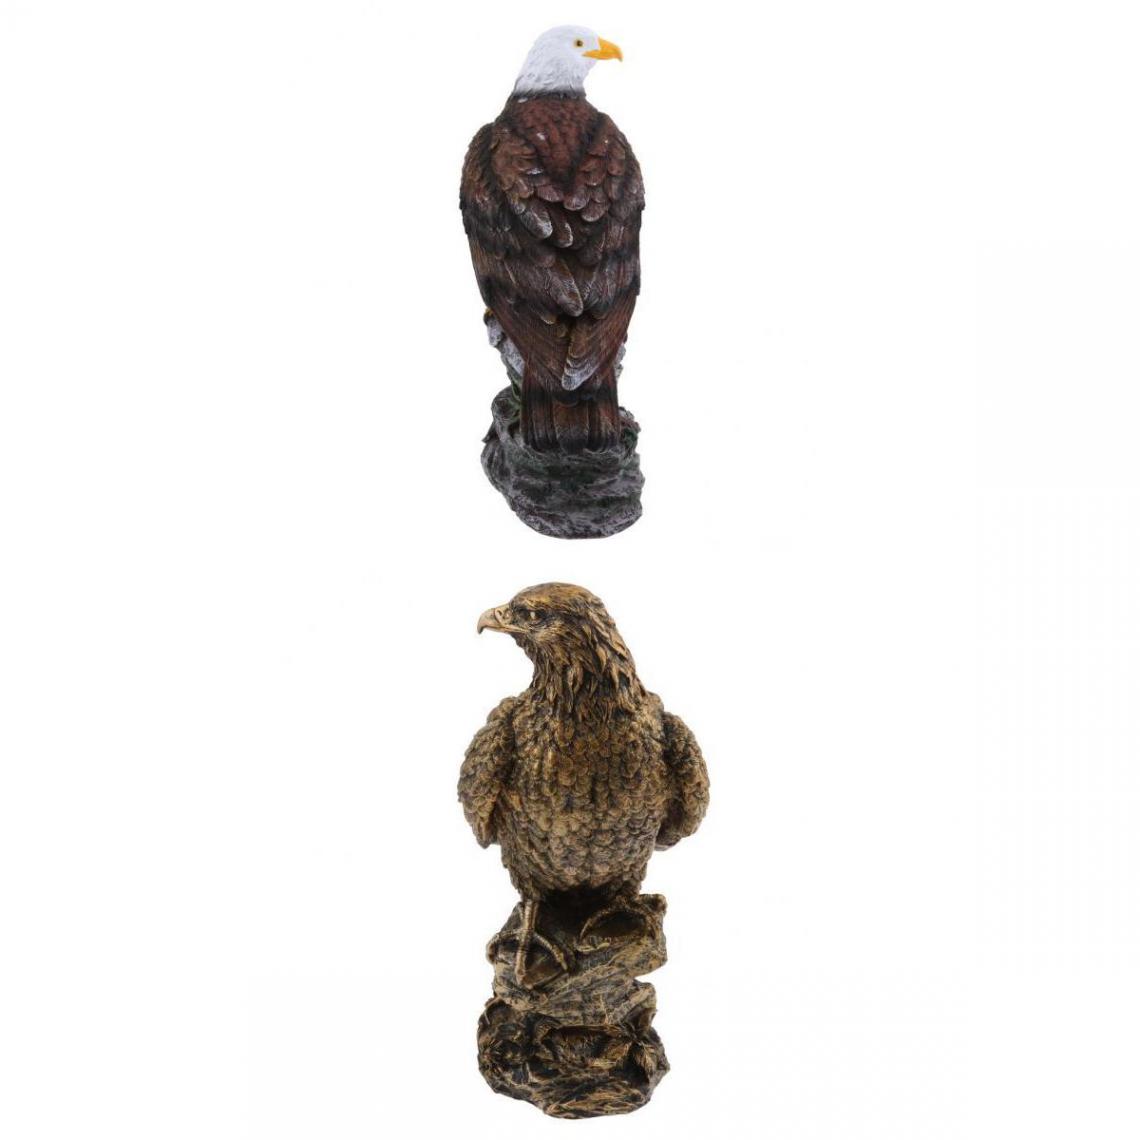 marque generique - 2pcs Figurines Aigle Modèle Oiseaux Pelouse Animal Sculpture Décor en Résine - Petite déco d'exterieur